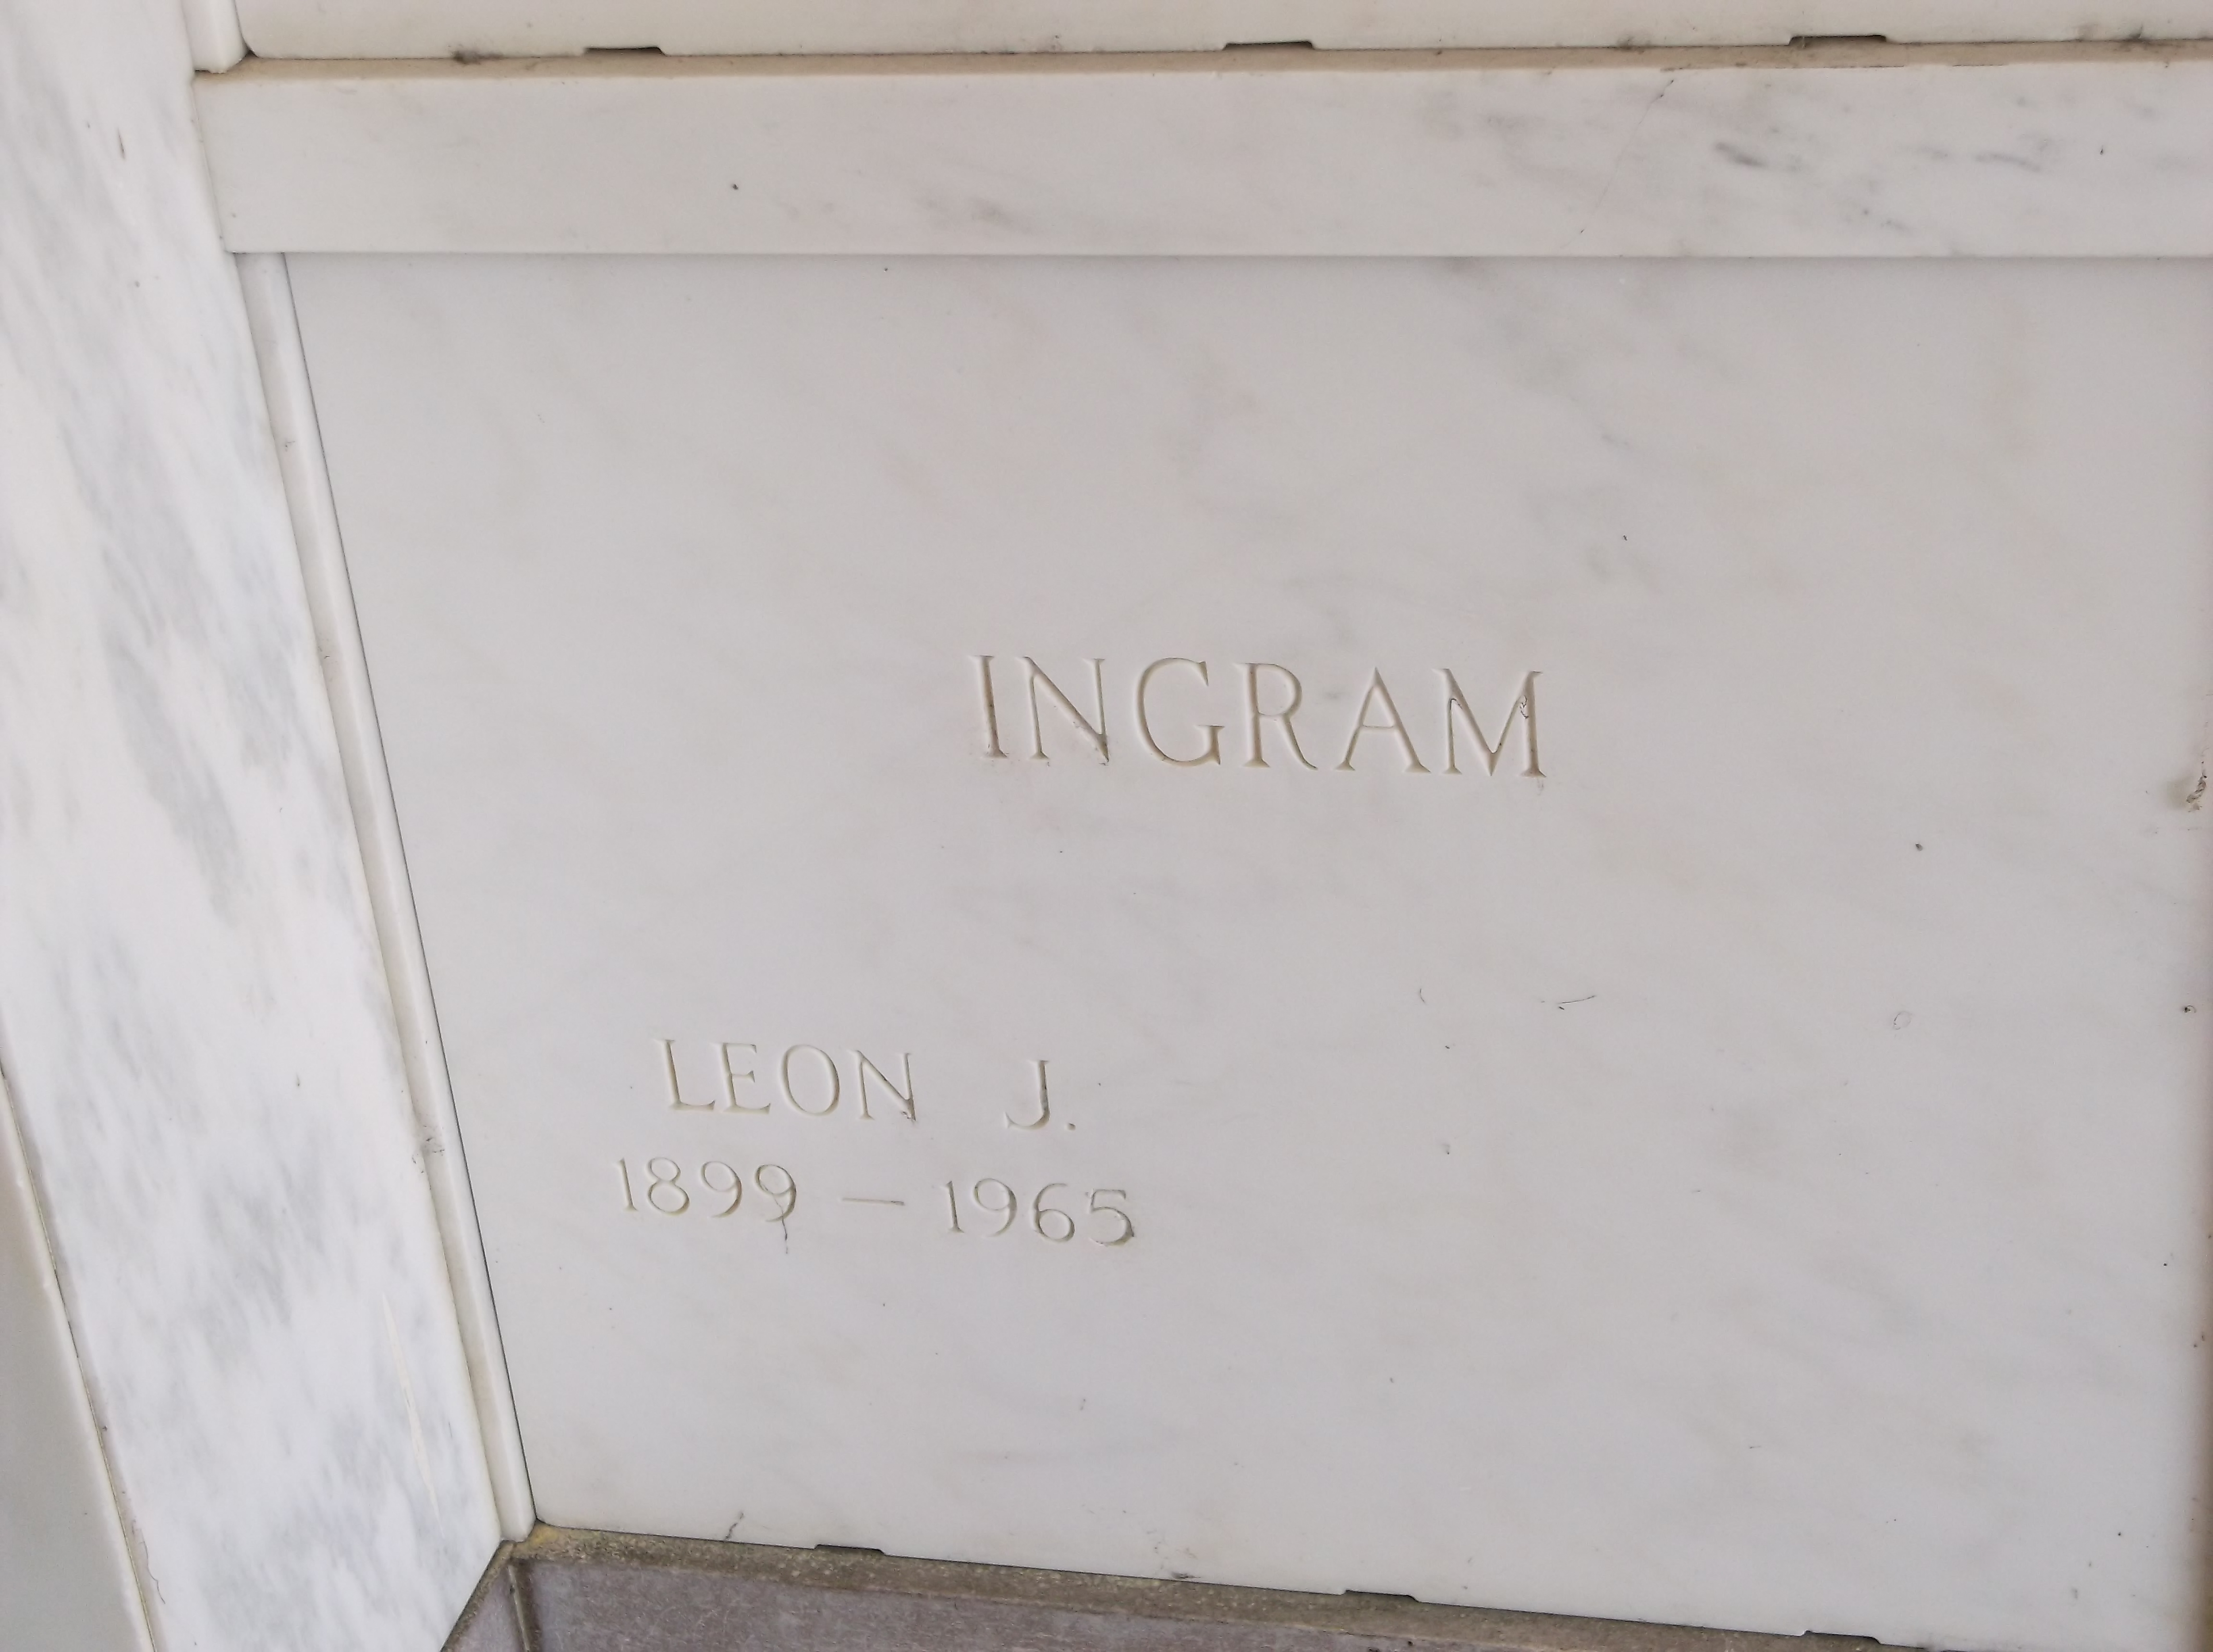 Leon J Ingram